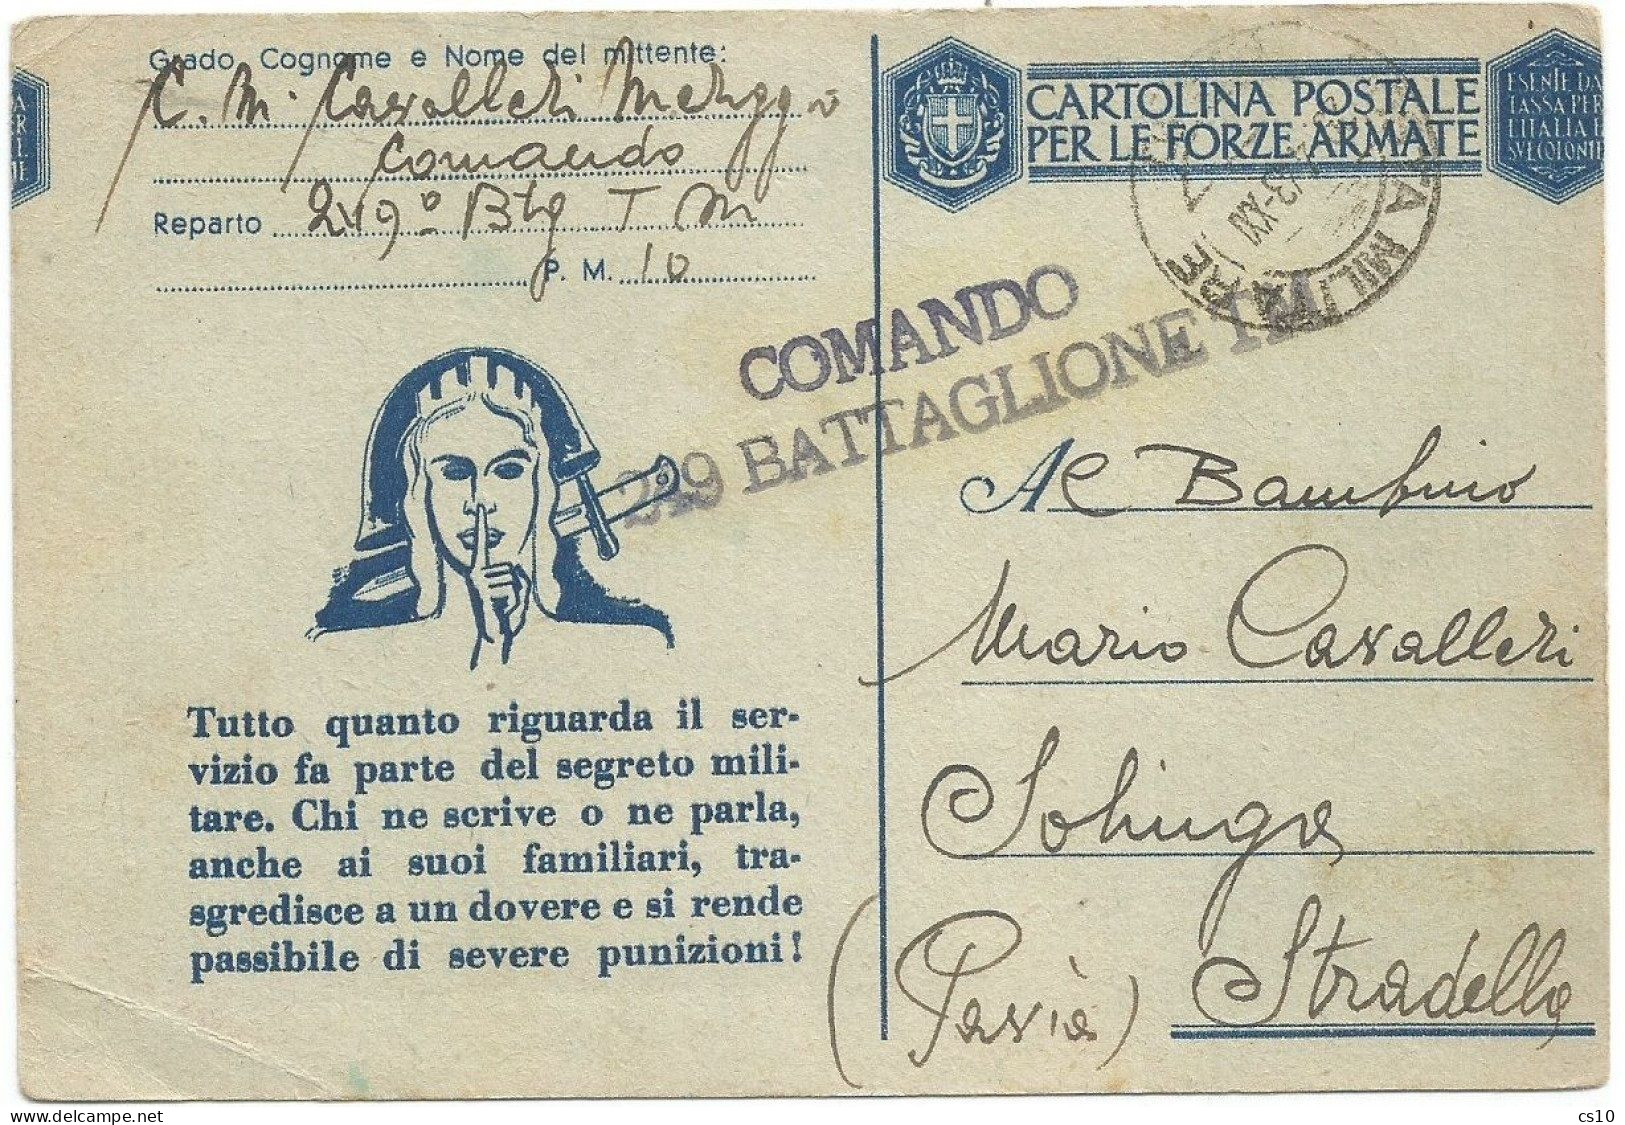 Cartolina Postale FFAA Franchigia Da PM10 Il 29apr1943 X Stradella - Bella Varietà Taglio Spostato Orizzontalmente - Stamped Stationery